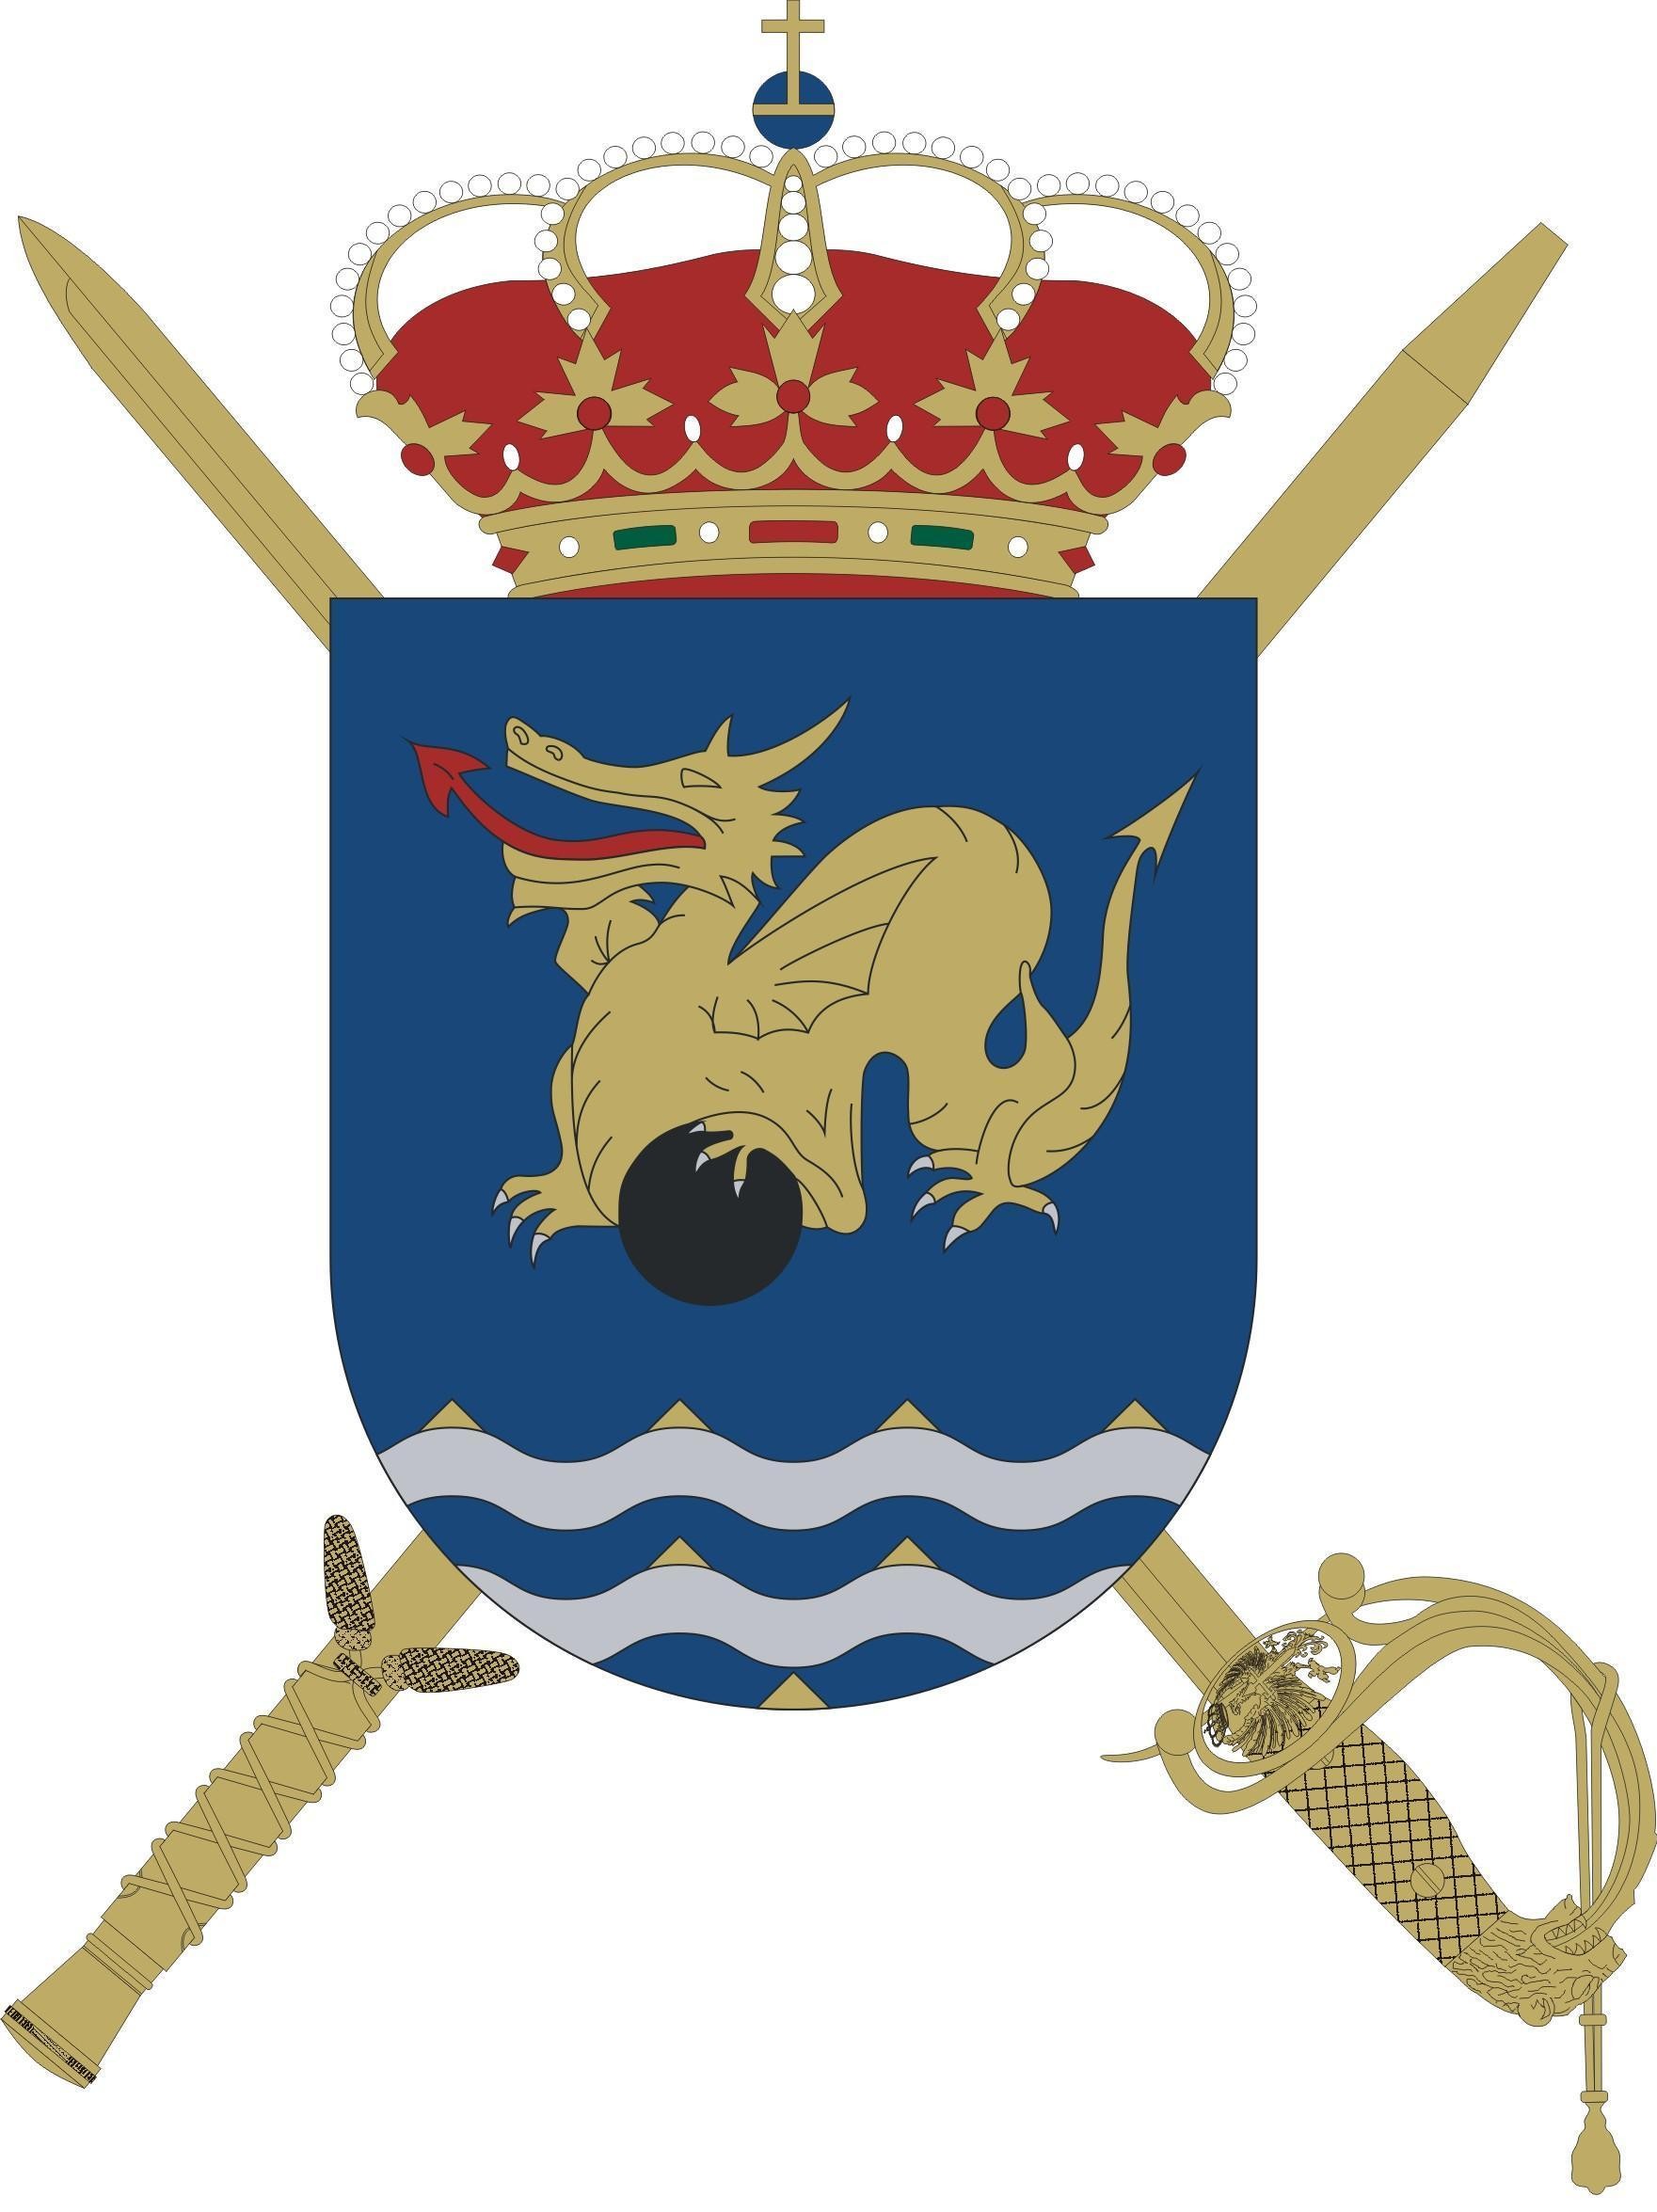 ESCUDO BCG BRICAN XVI (Batallón de Cuartel General de la Brigada Canarias XVI)